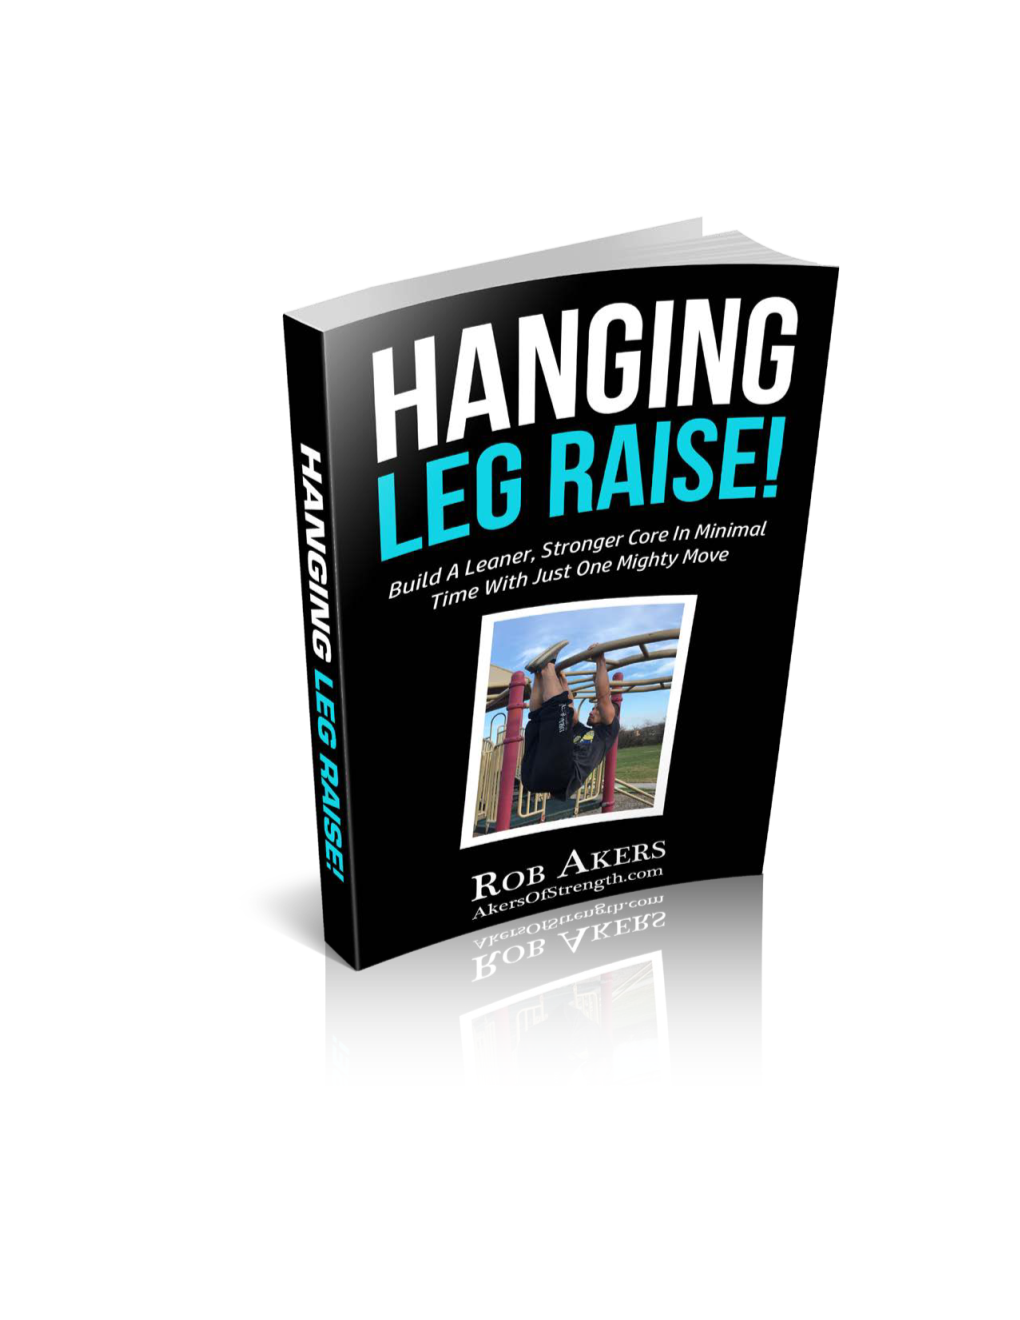 Hanging Leg Raise!